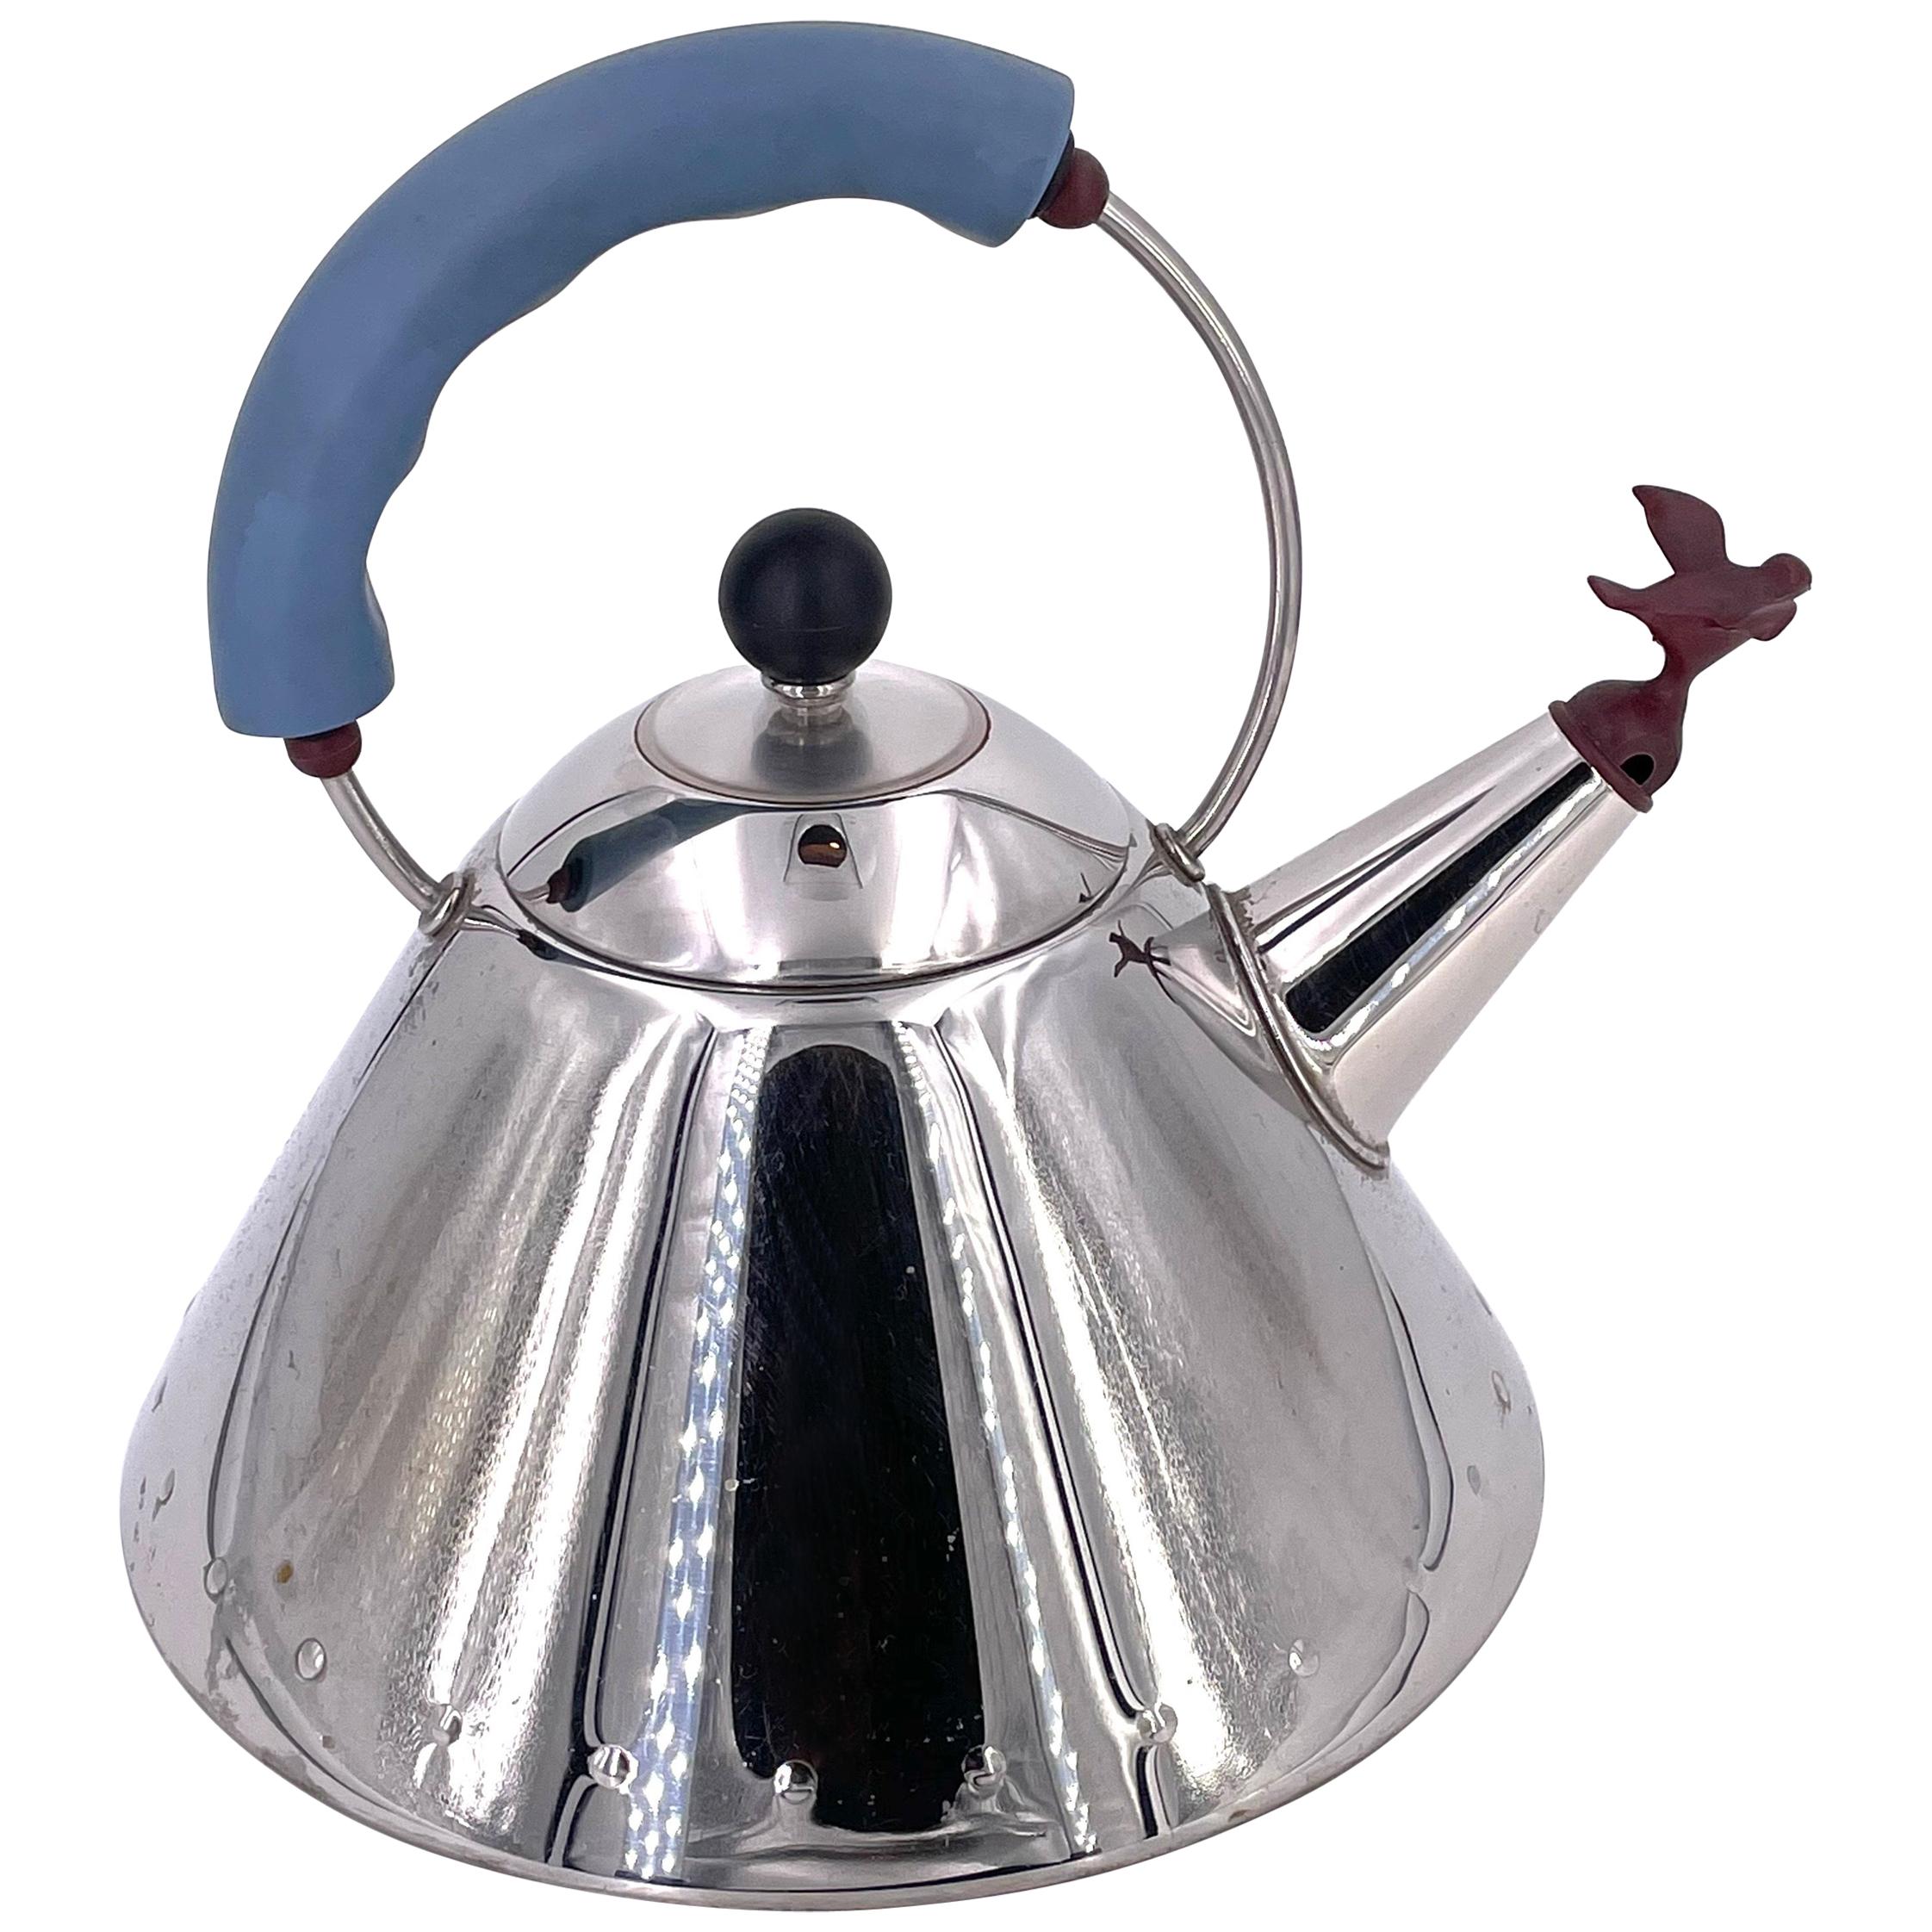 Alessi Tea Set - 3 For Sale on 1stDibs | alessi tea kettle, alessi 